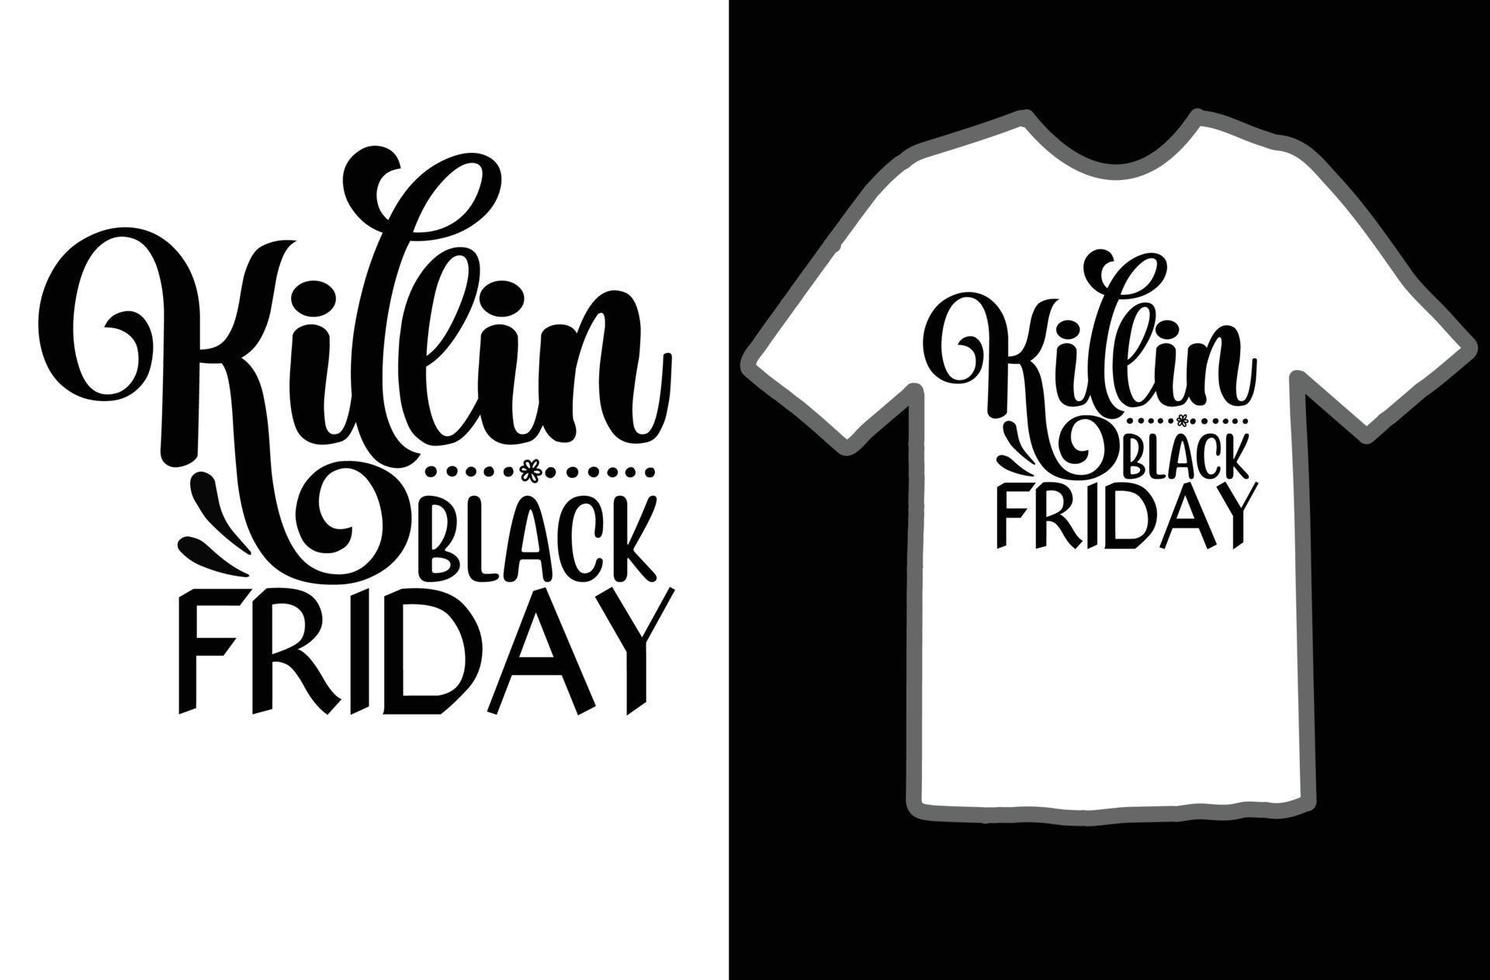 Killin black friday svg t shirt design vector